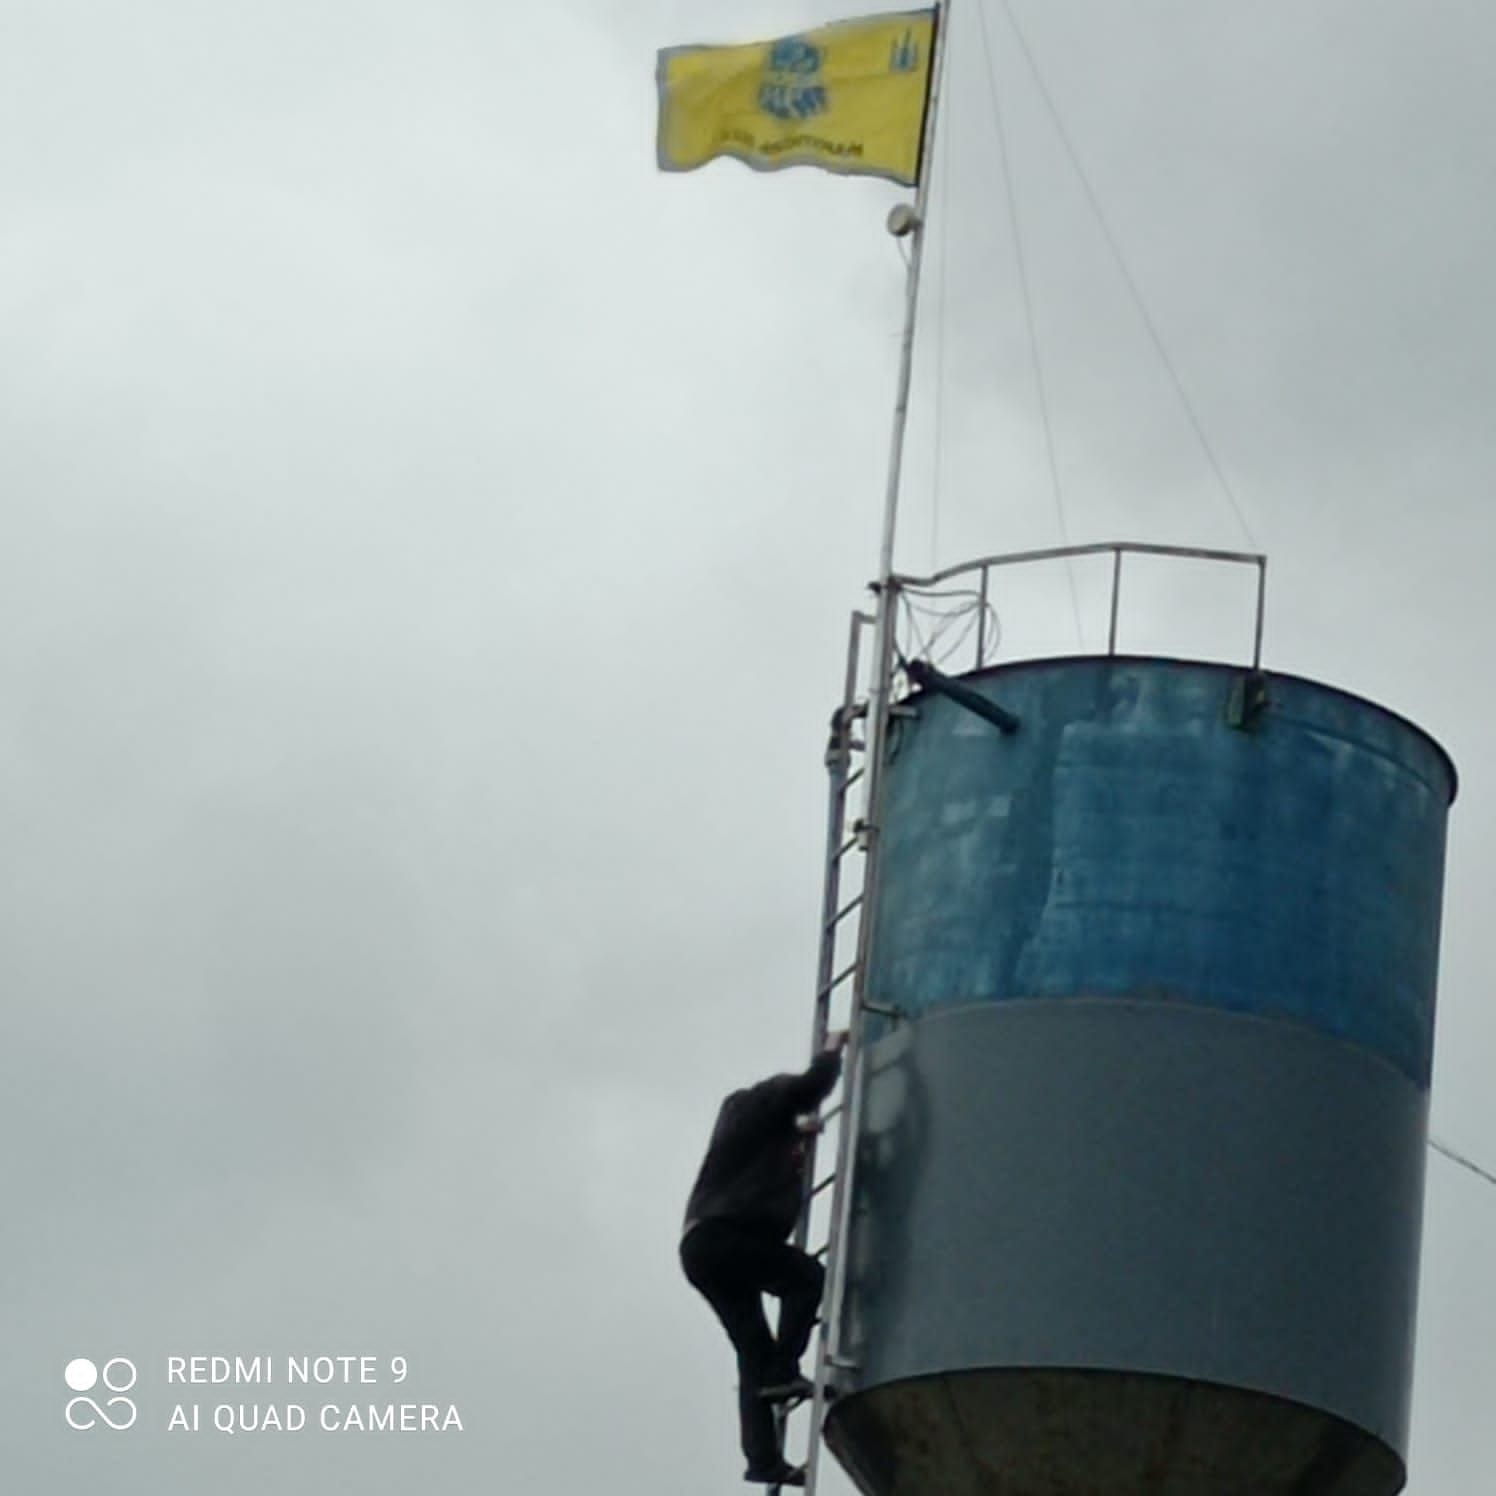 Am Tag nach der Befreiung hissten die Mitarbeiter auf dem Wasserturm eine Fahne zur Unterstützung der Ukraine: Vor dem Krieg war auch der Turm in ukrainischen Farben, auf Druck der Besatzer musste der gelbe Streifen blau übergemalt werden.